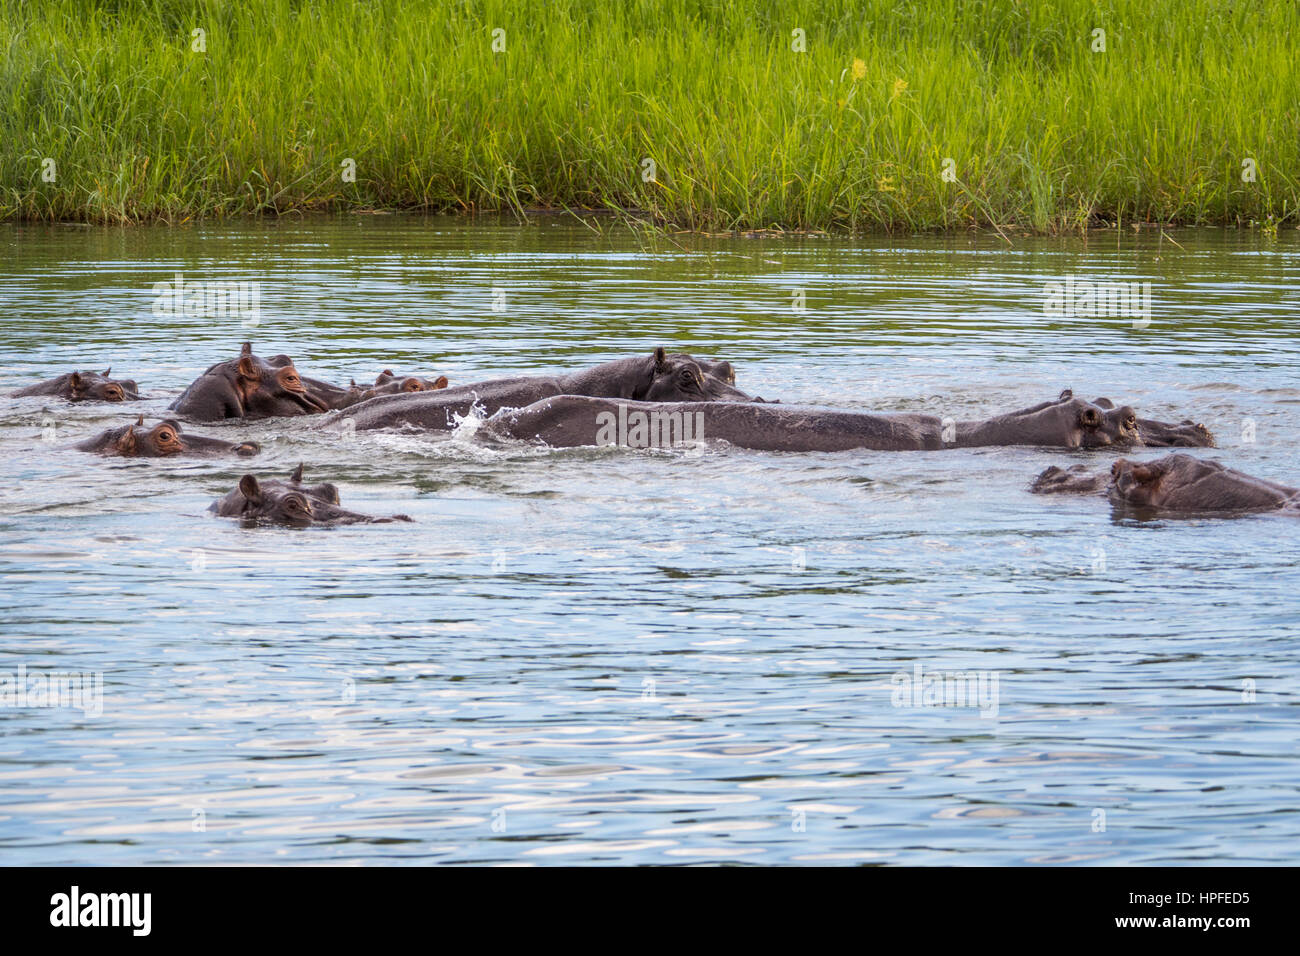 Hippos on the Zambezi River, Victoria Falls, Zimbabwe Stock Photo